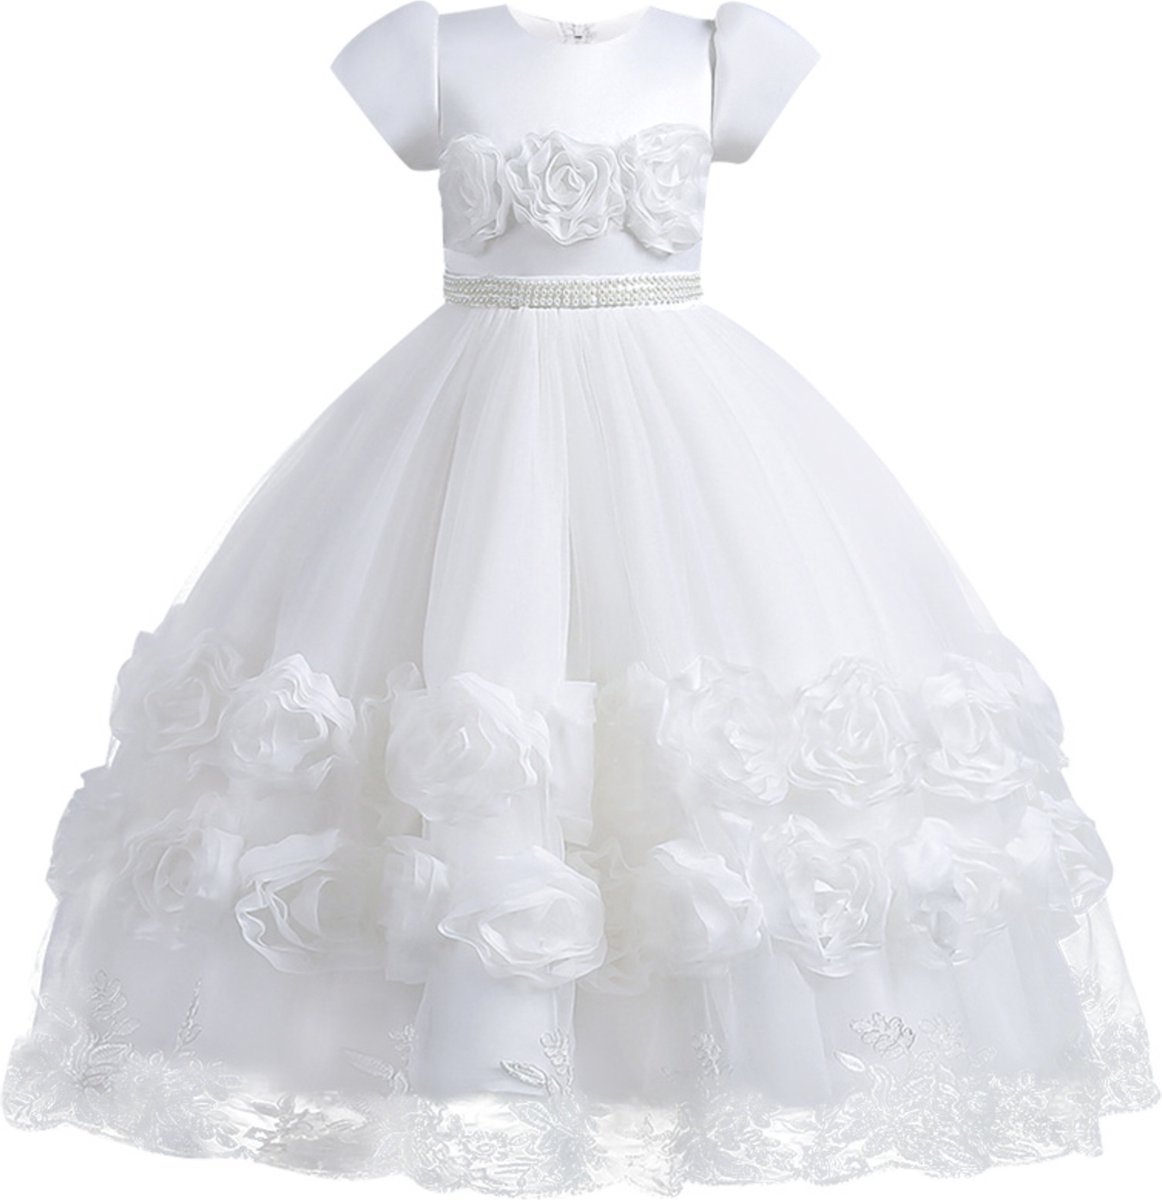 Feestjurk meisje - bruidsmeisjes jurken - Het Betere Merk - 158/164 (160) - communie jurk - bruidsmeisjes jurken voor kinderen - Prinsessenjurk meisje - cadeau meisje